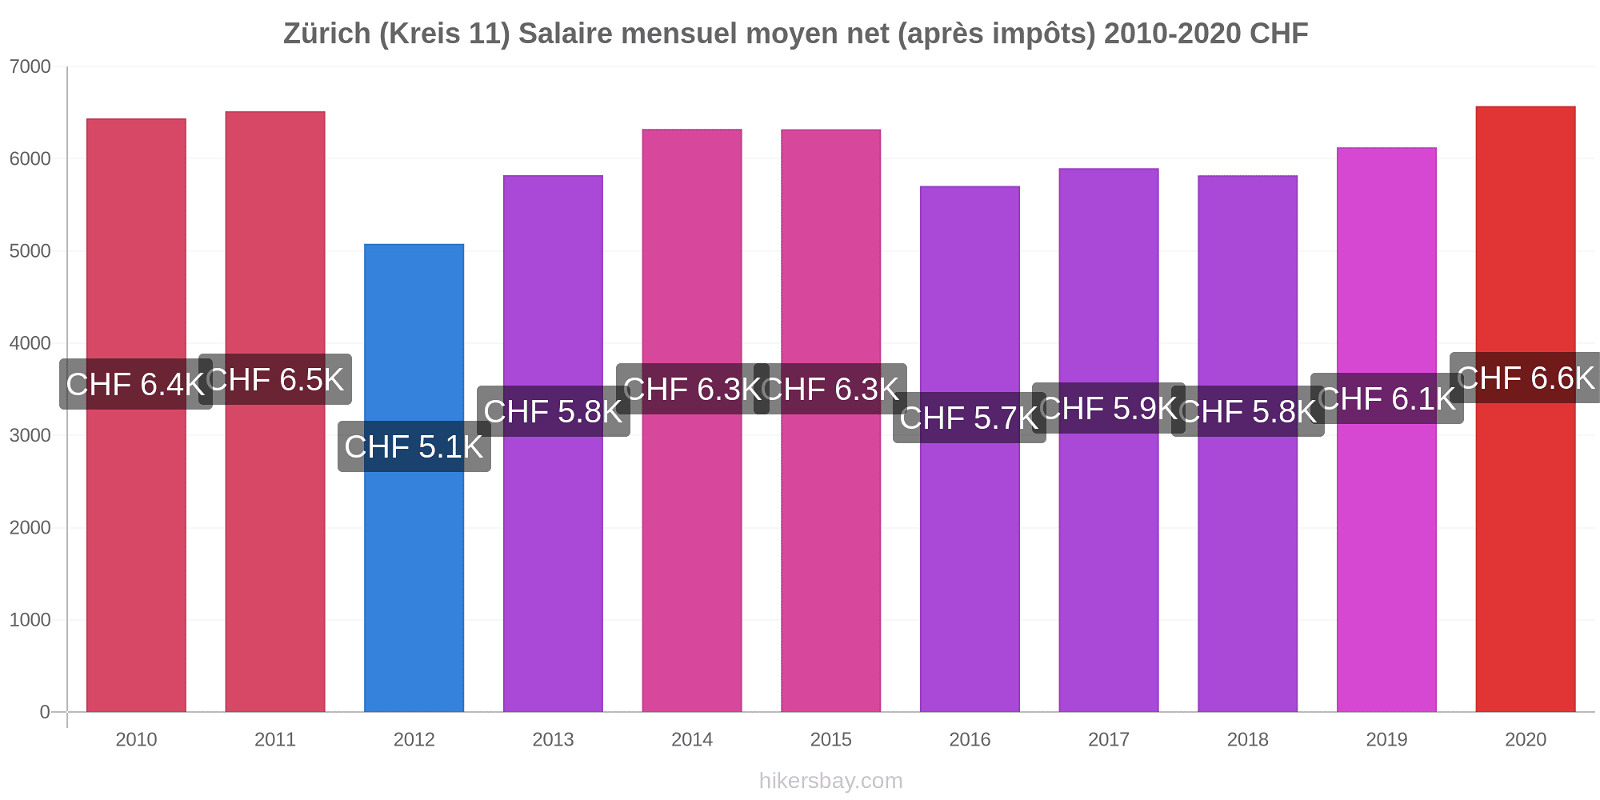 Zürich (Kreis 11) changements de prix Salaire mensuel Net (après impôts) hikersbay.com